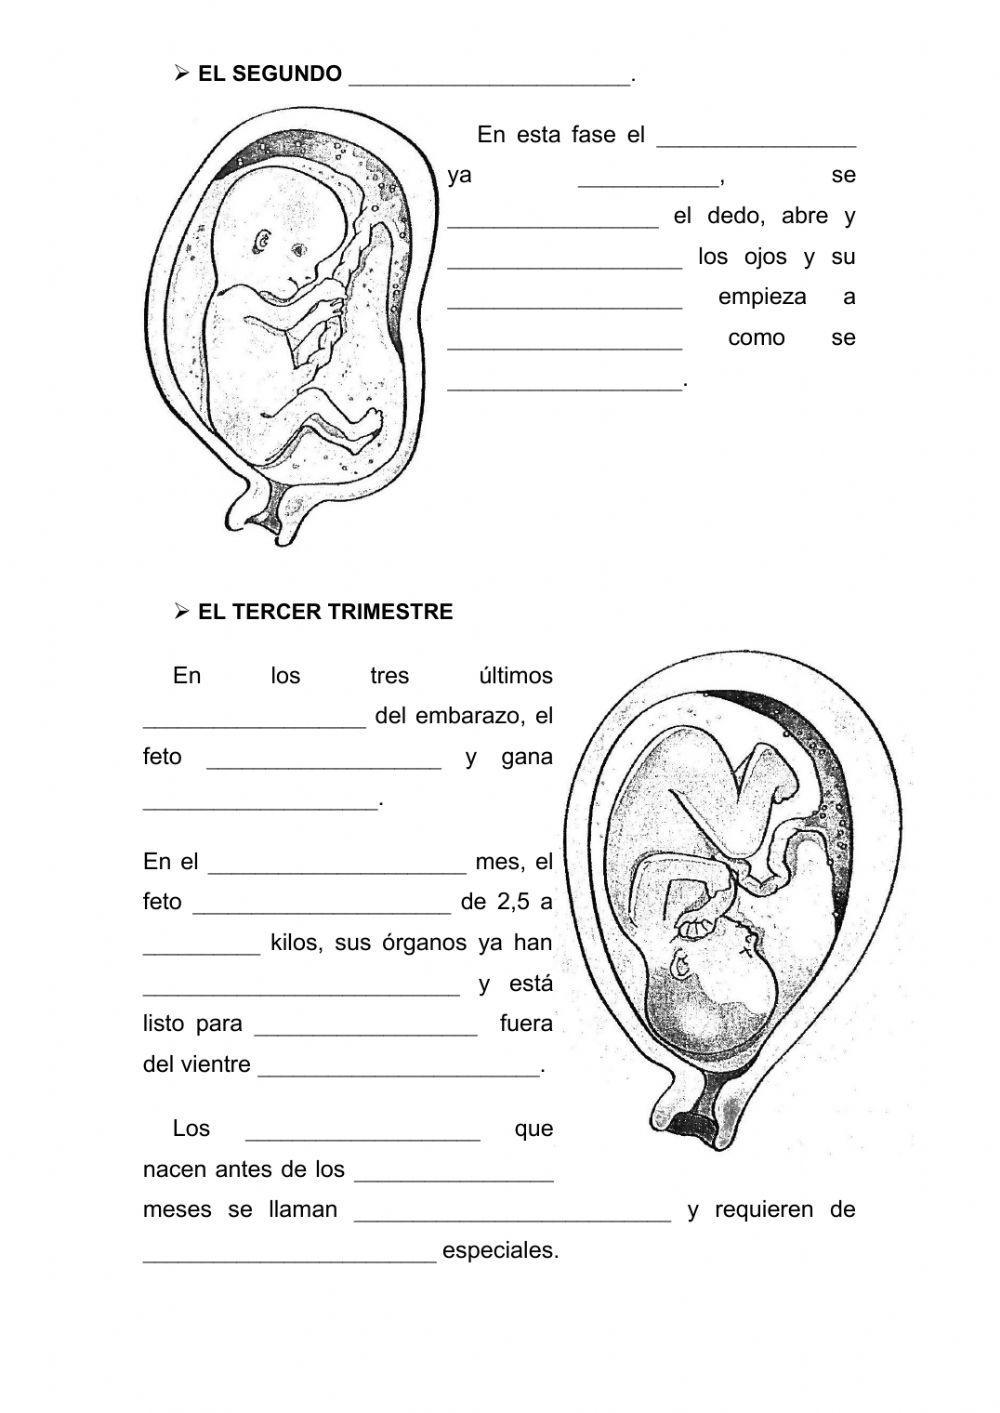 Las fases del embarazo